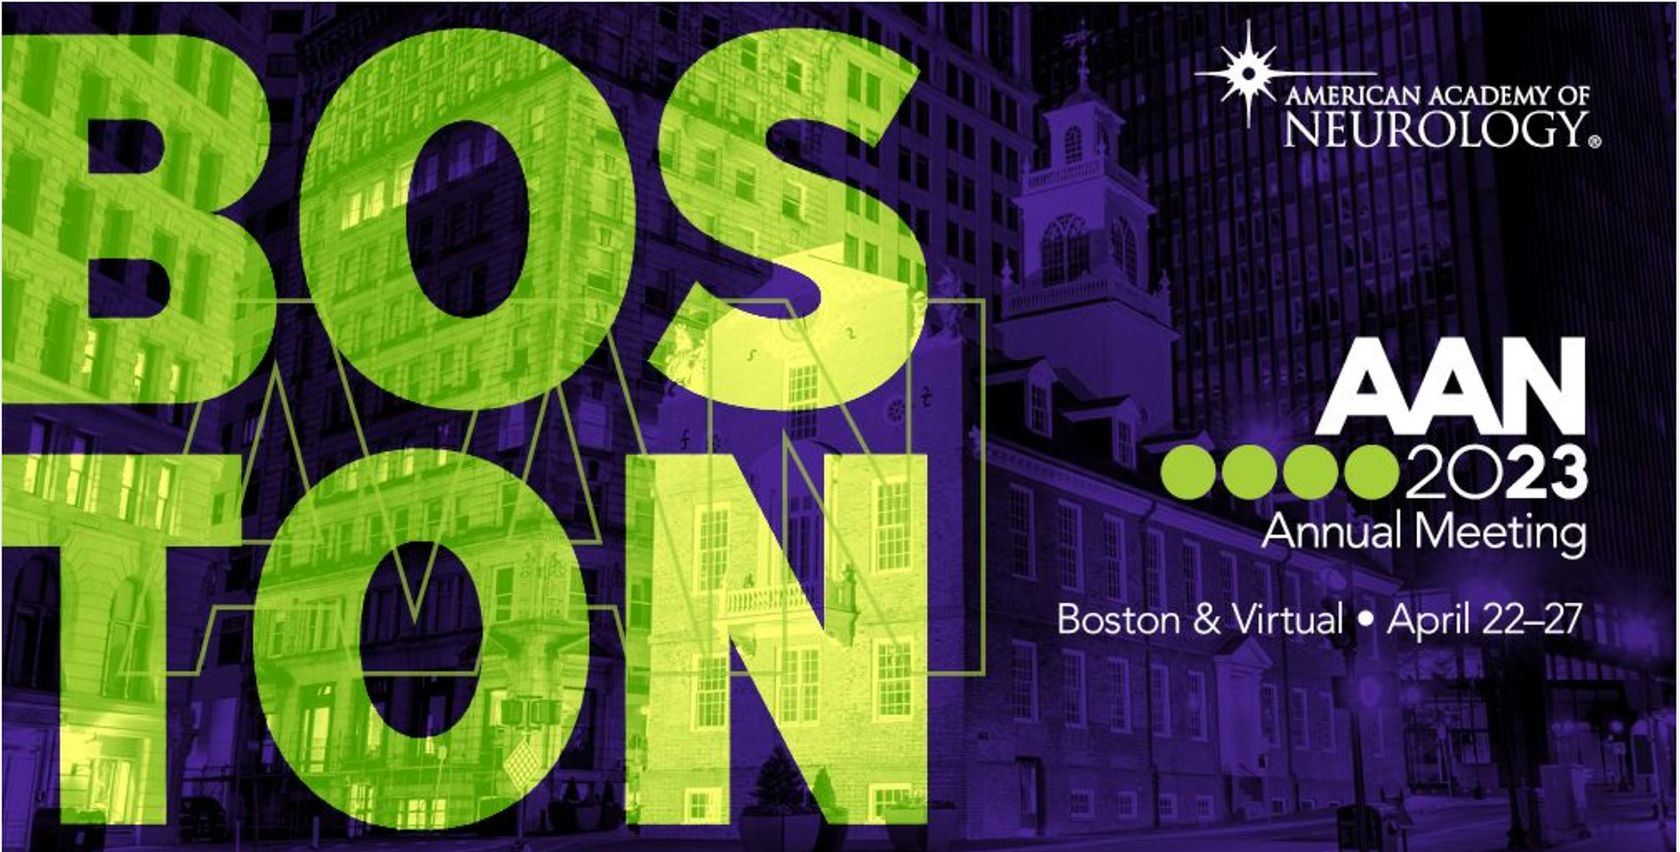 AAN Banner Annual Meeting 2023 in Boston